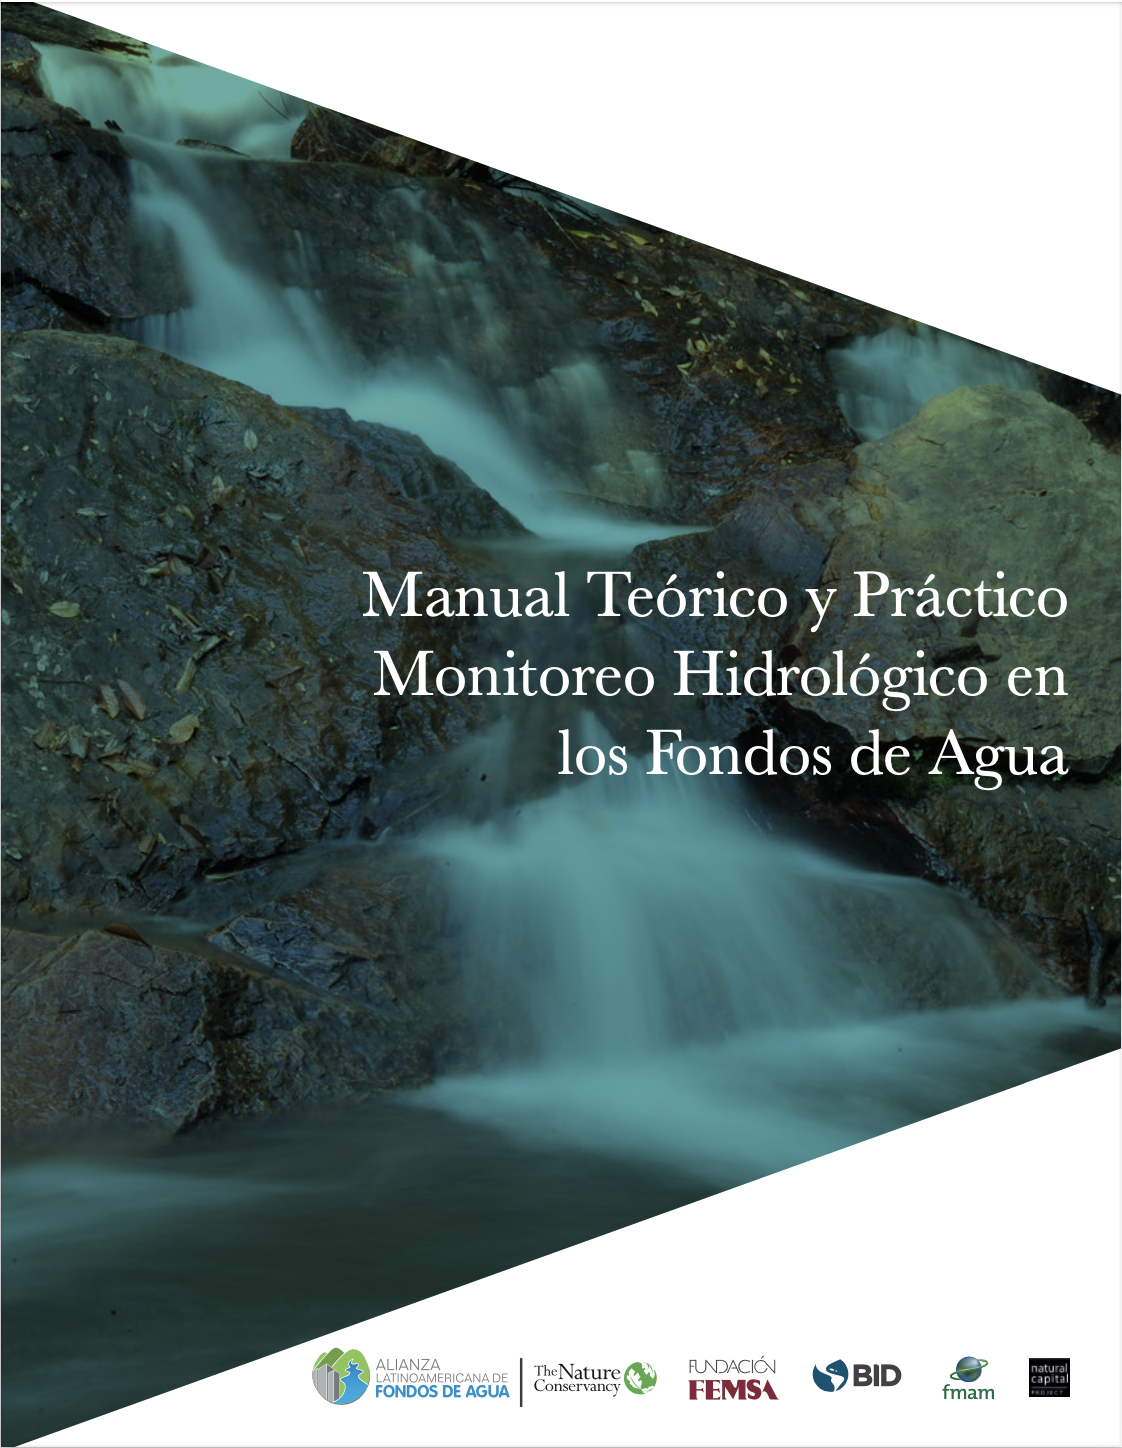 Manual Teórico y Práctico Monitoreo Hidrológico en los Fondos de Agua (Research Gate)